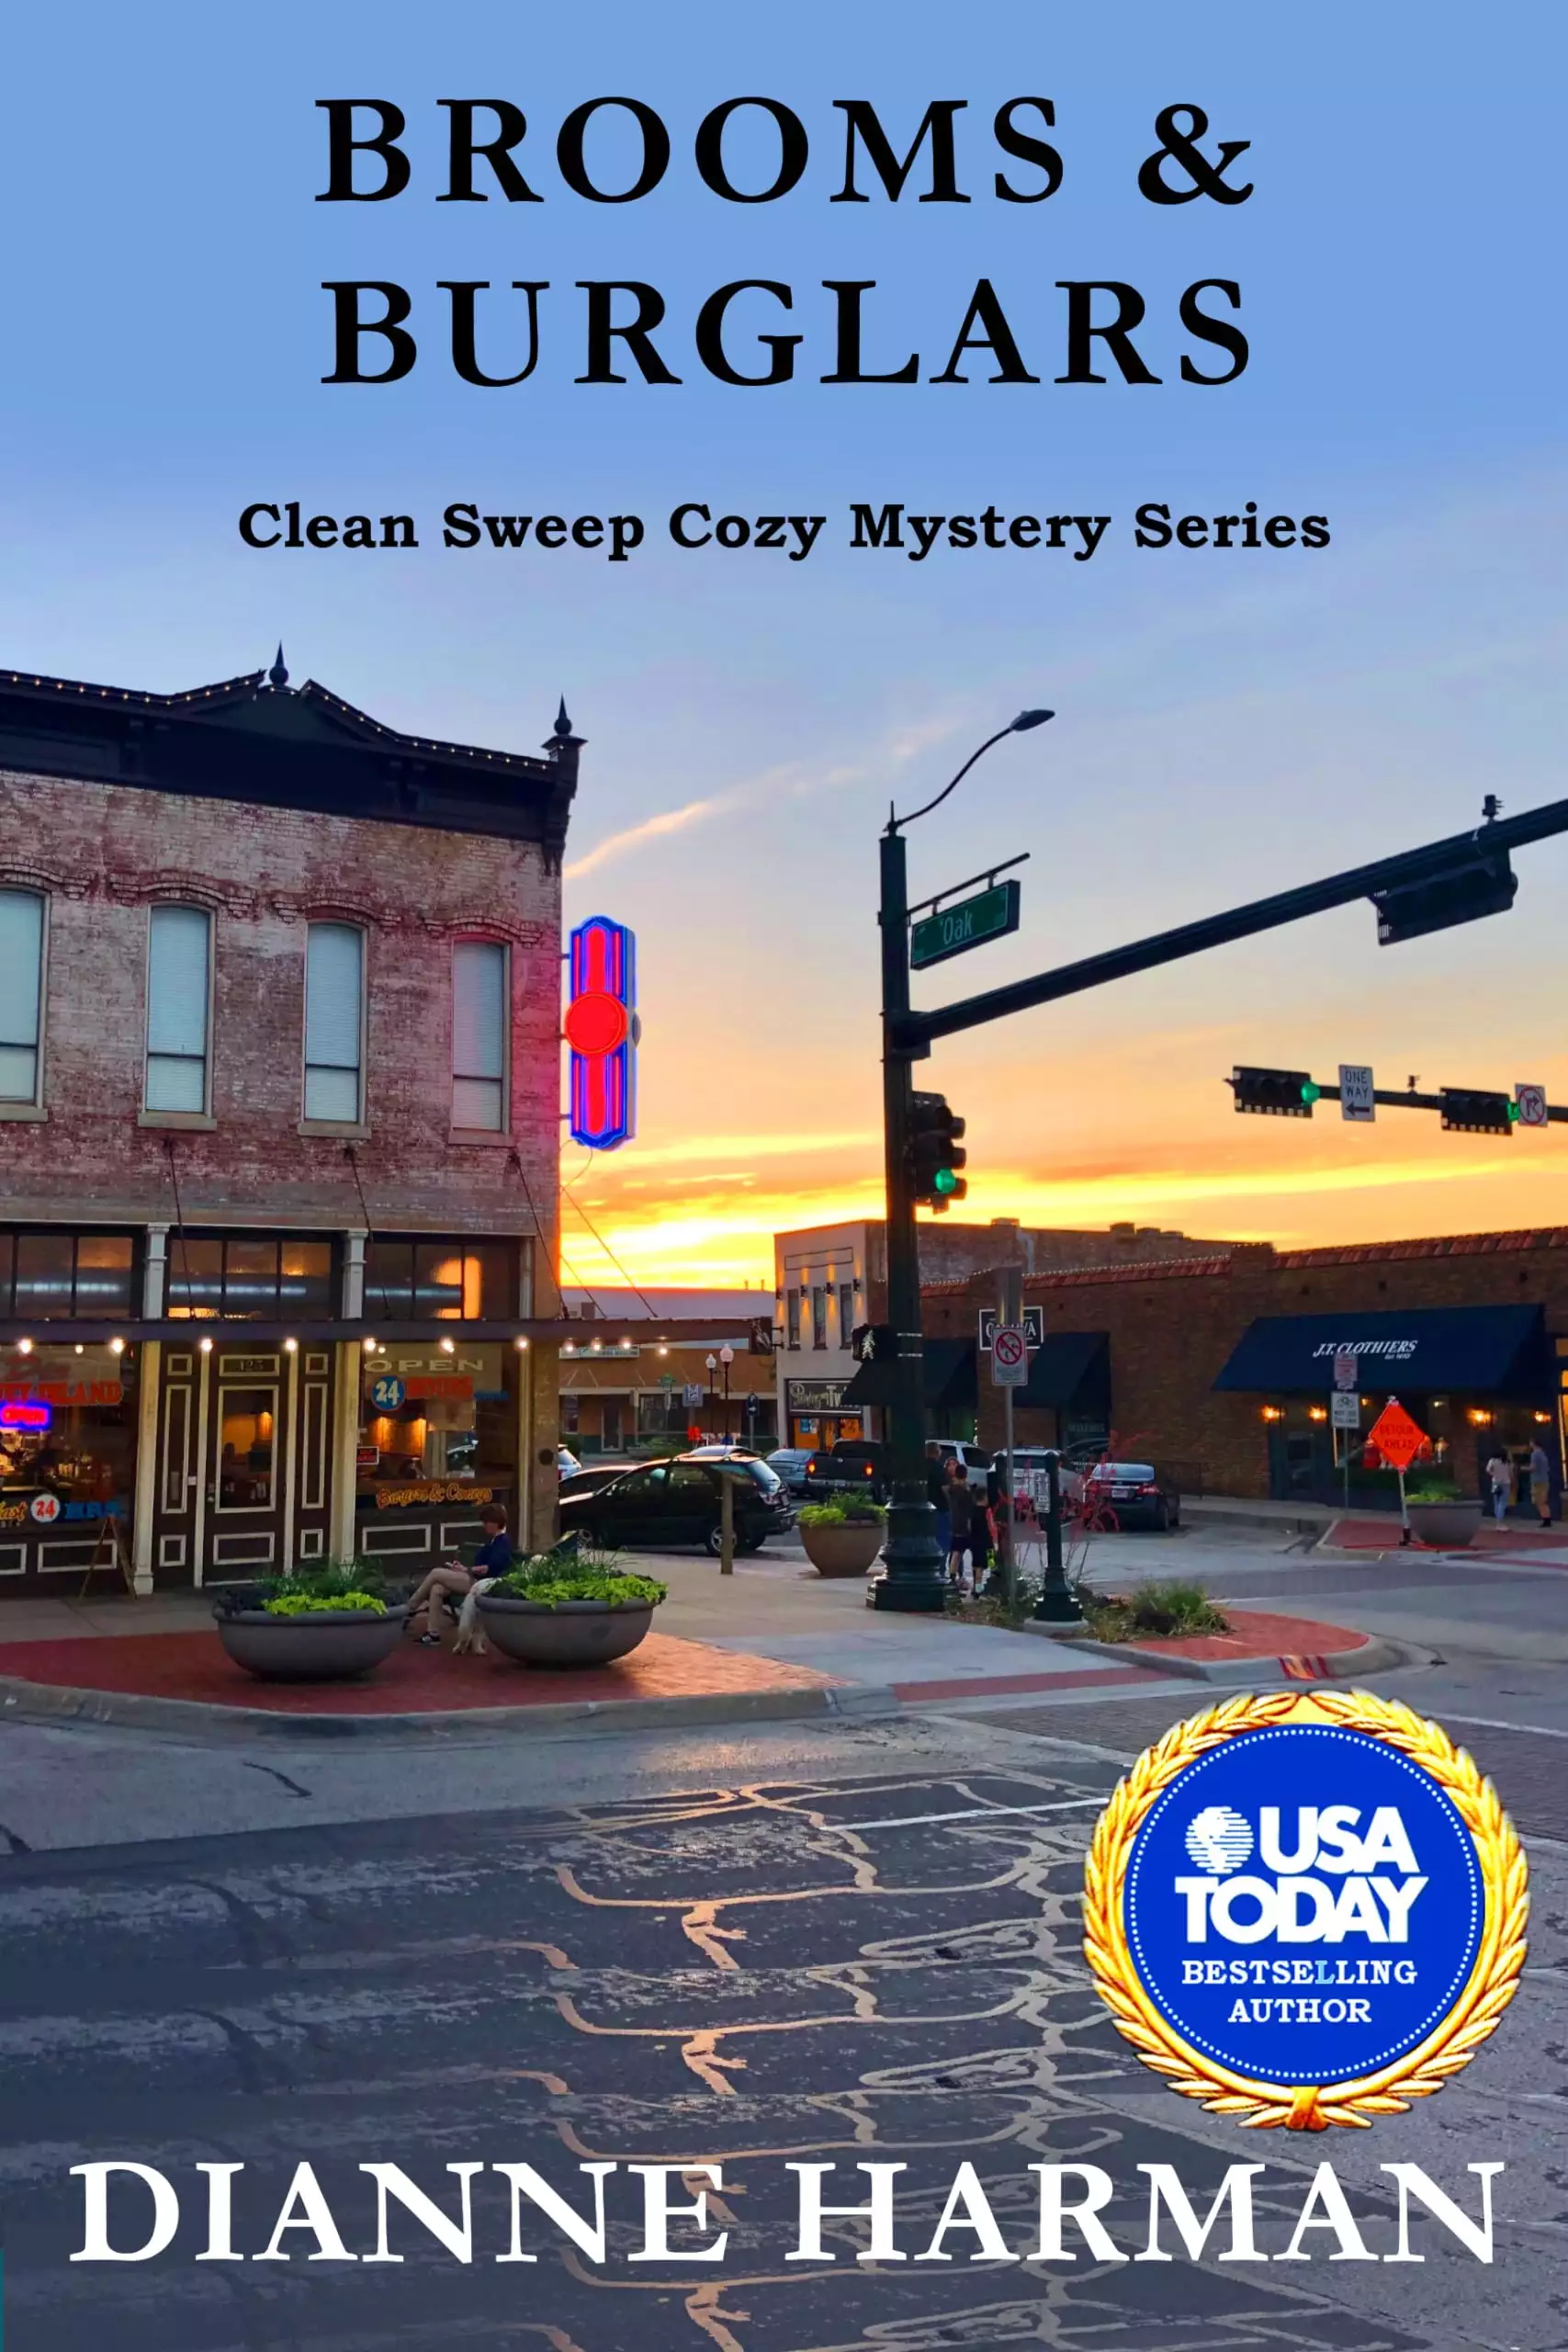 Brooms & Burglars: Clean Sweep Cozy Mystery Series